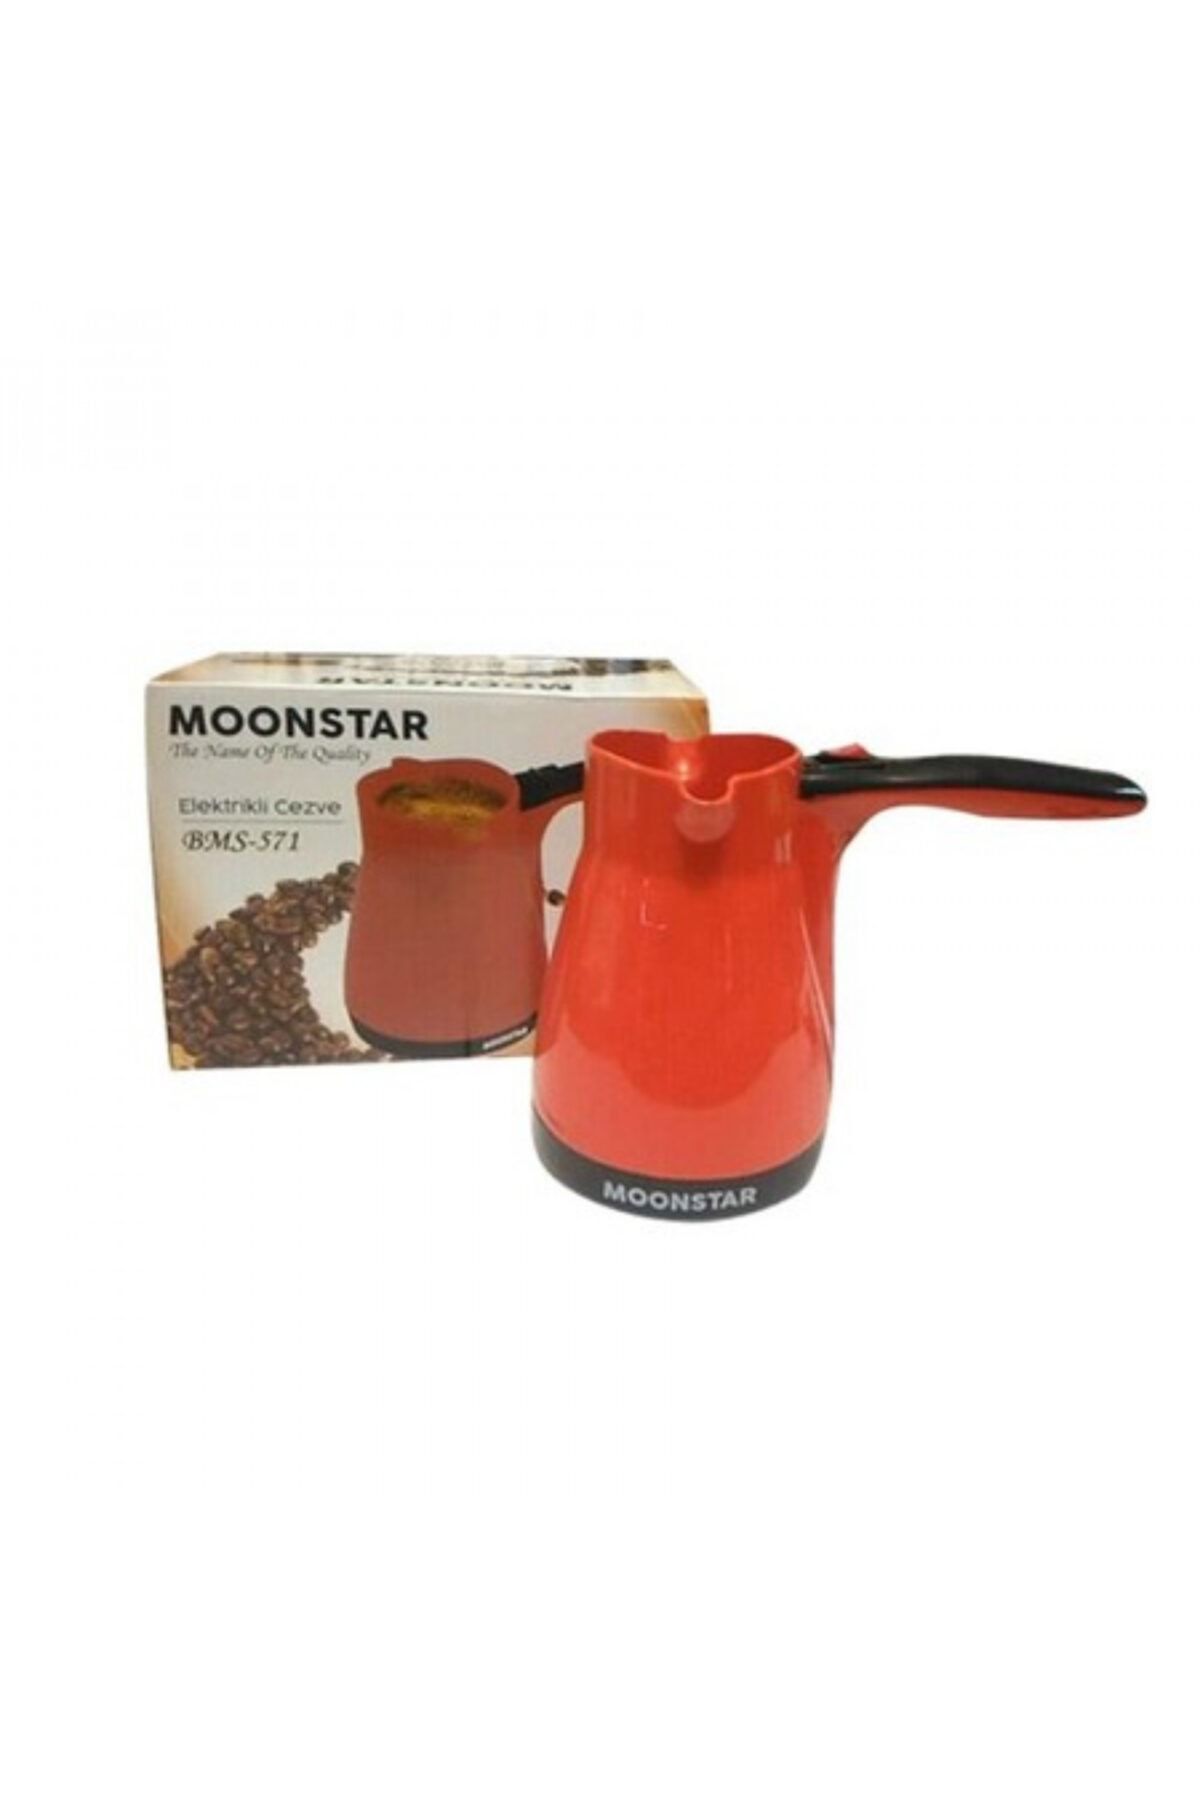 Moonstar Bms-571 Kırmızı Kahve Makinesi